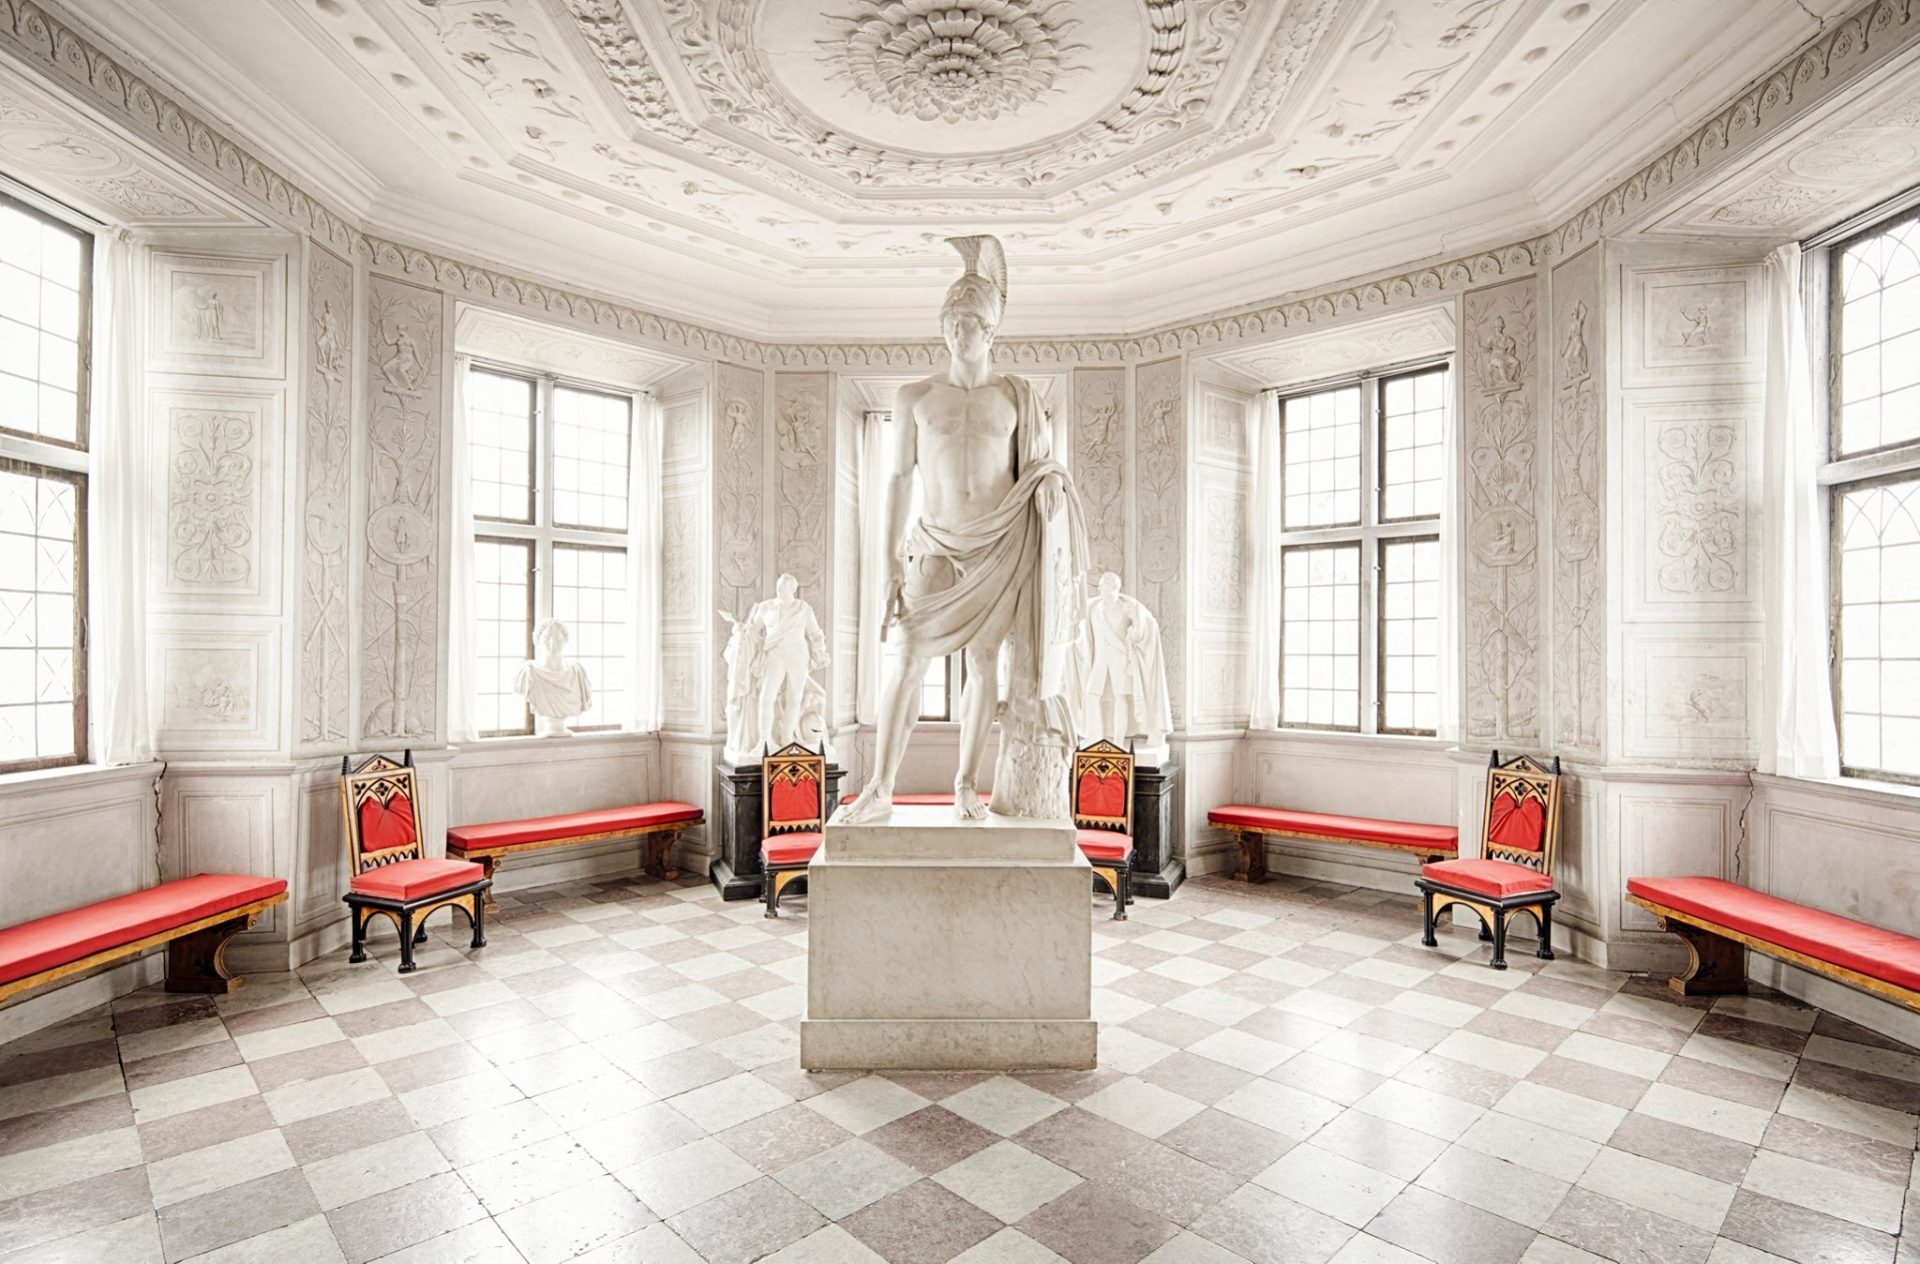 Interiör i slottet där flera statyer visas.